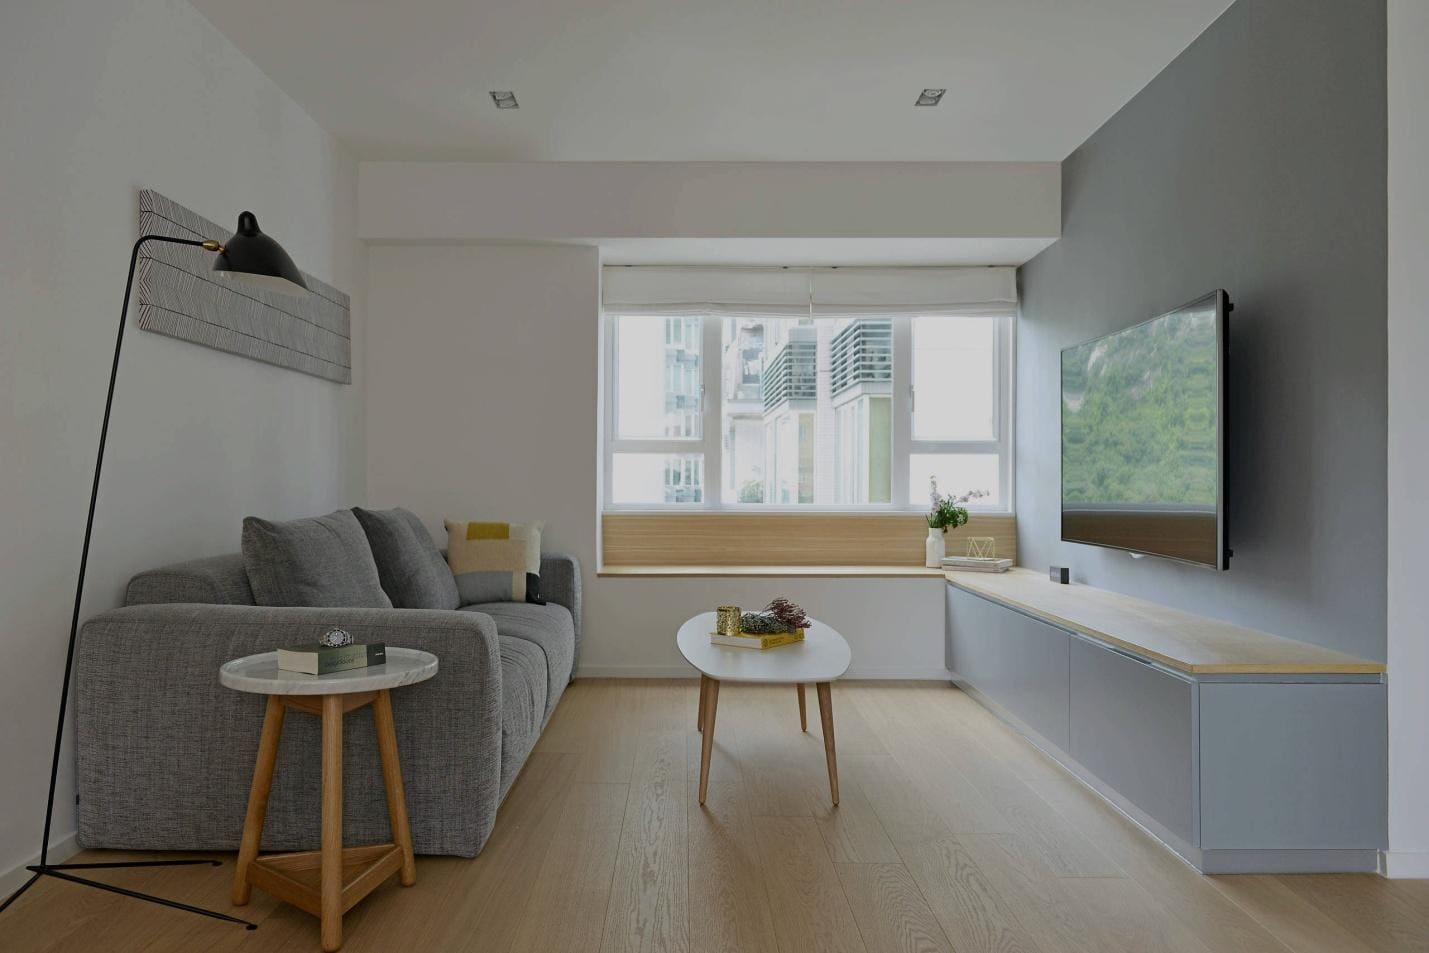 Дизайн интерьера для маленькой квартиры в стиле минимализм